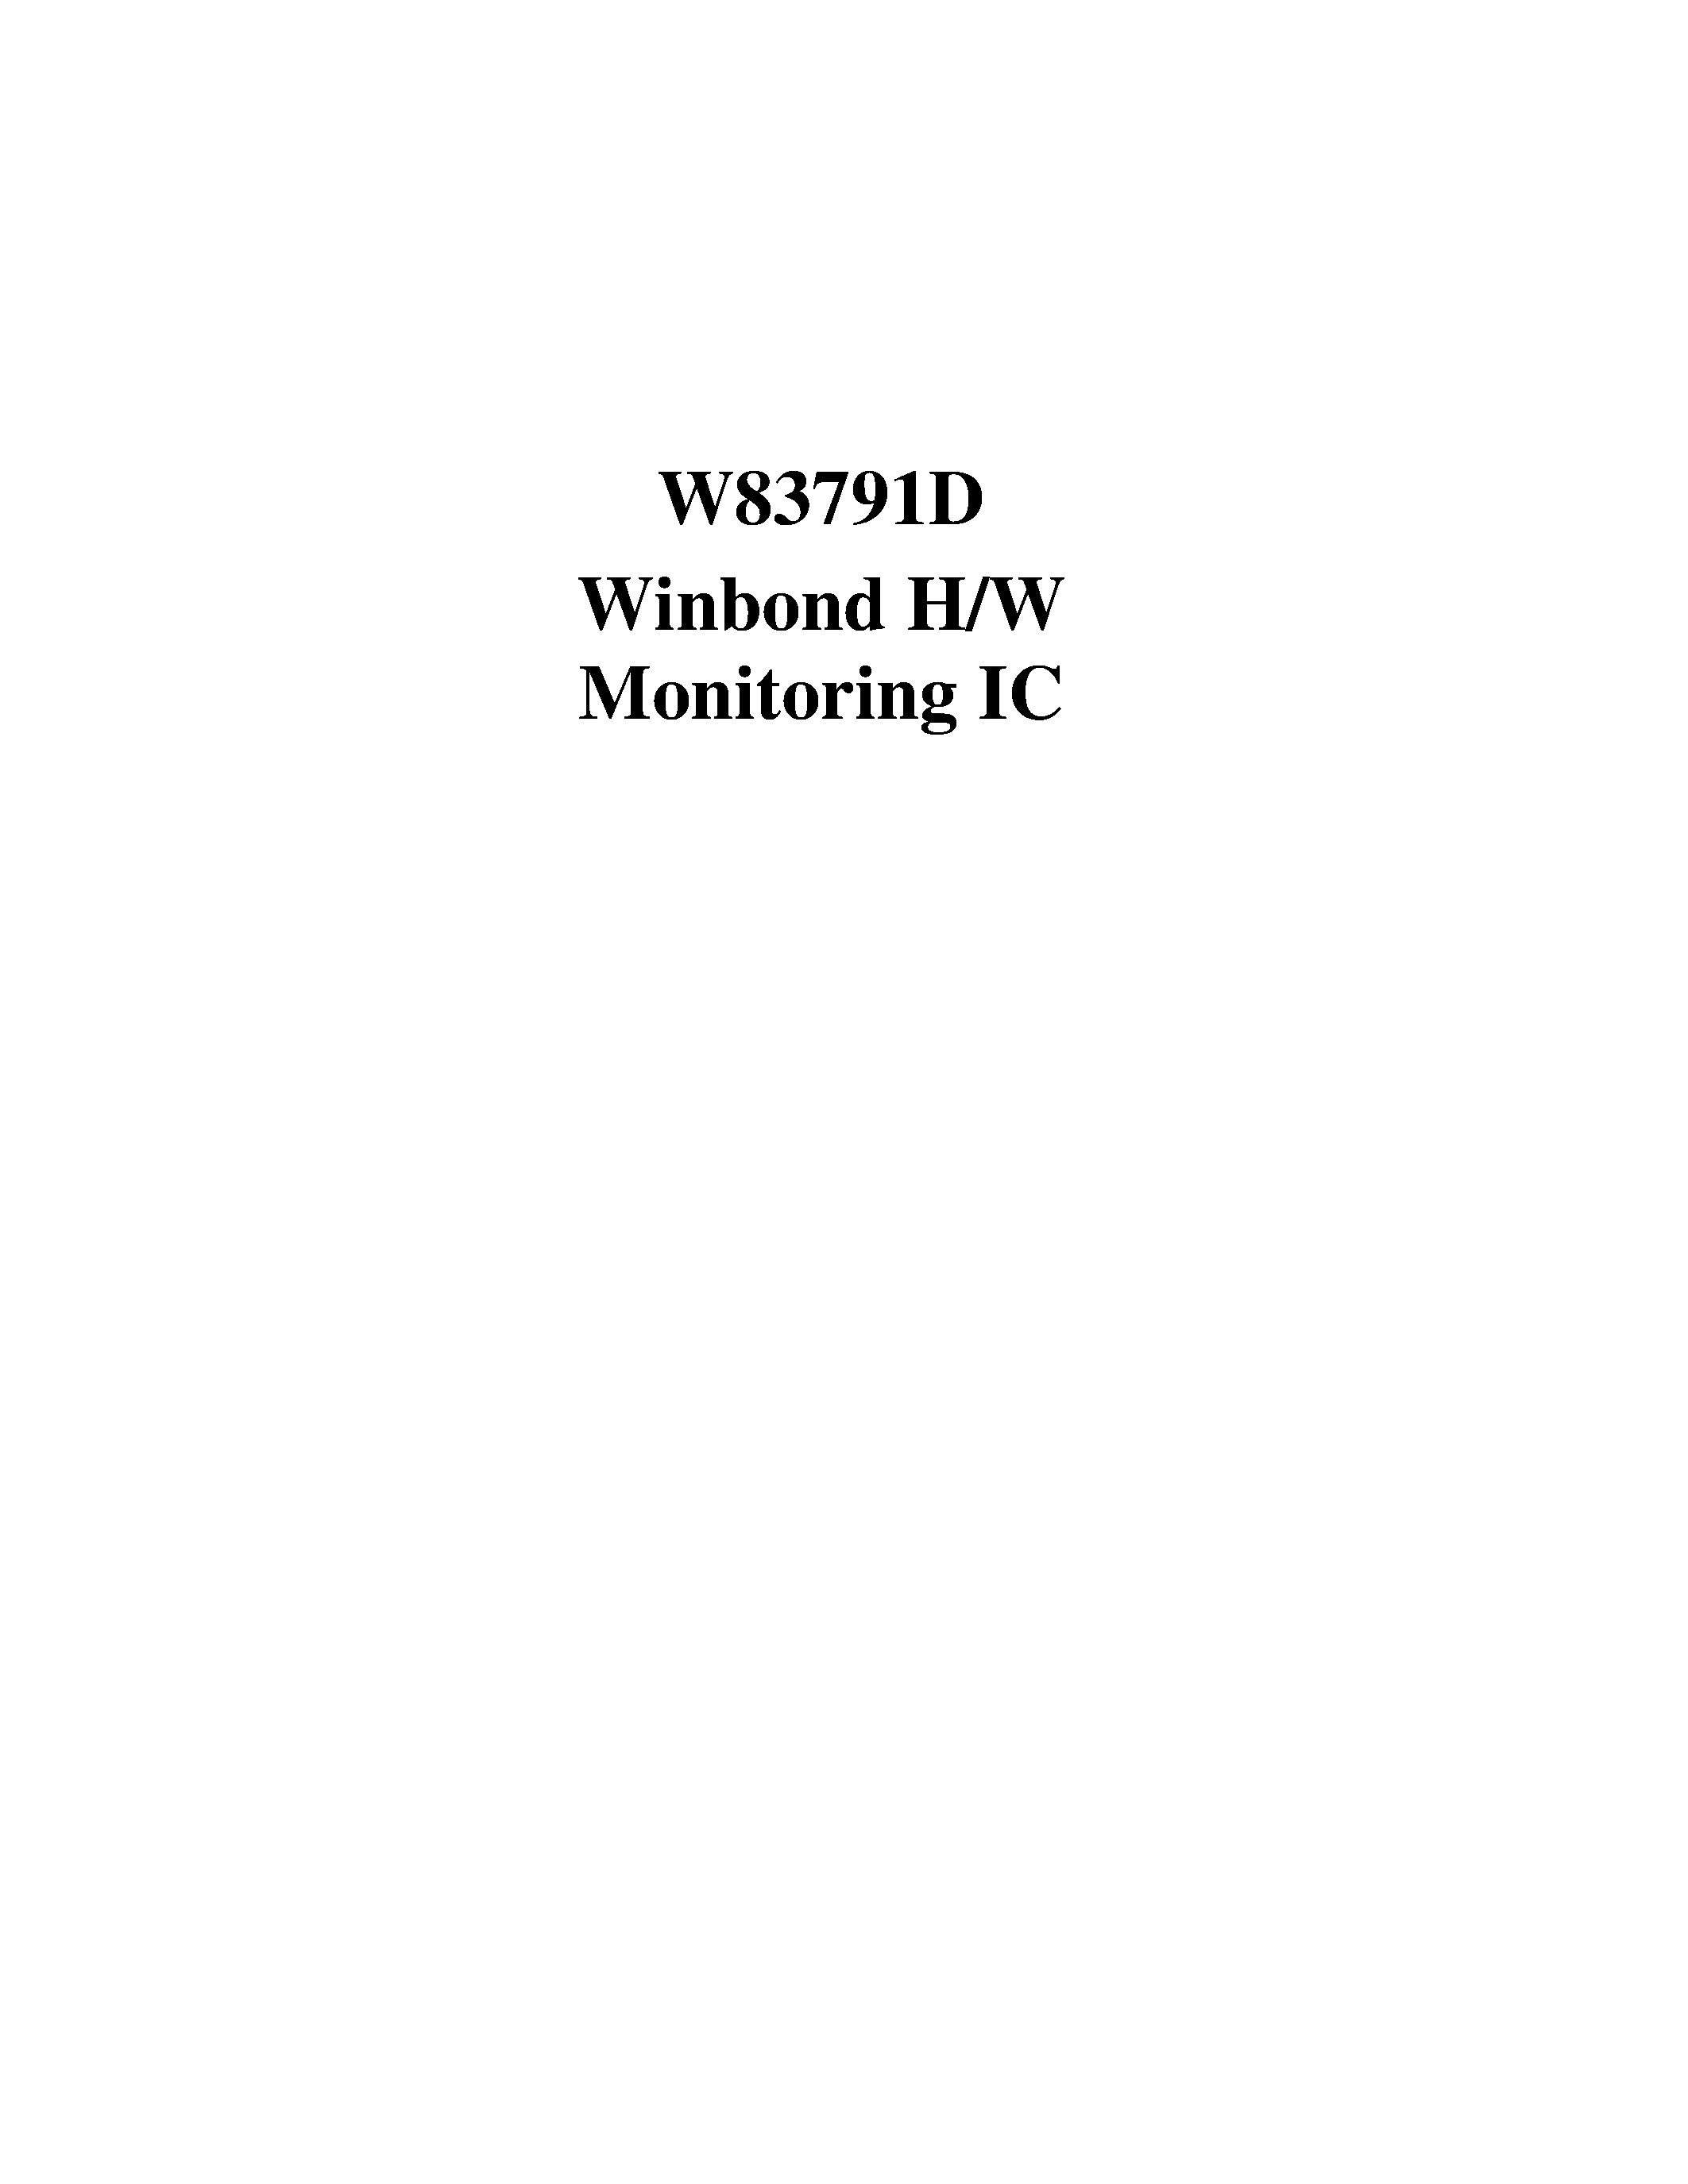 Даташит W83791D - W83791D Winbond H/W Monitoring IC страница 1